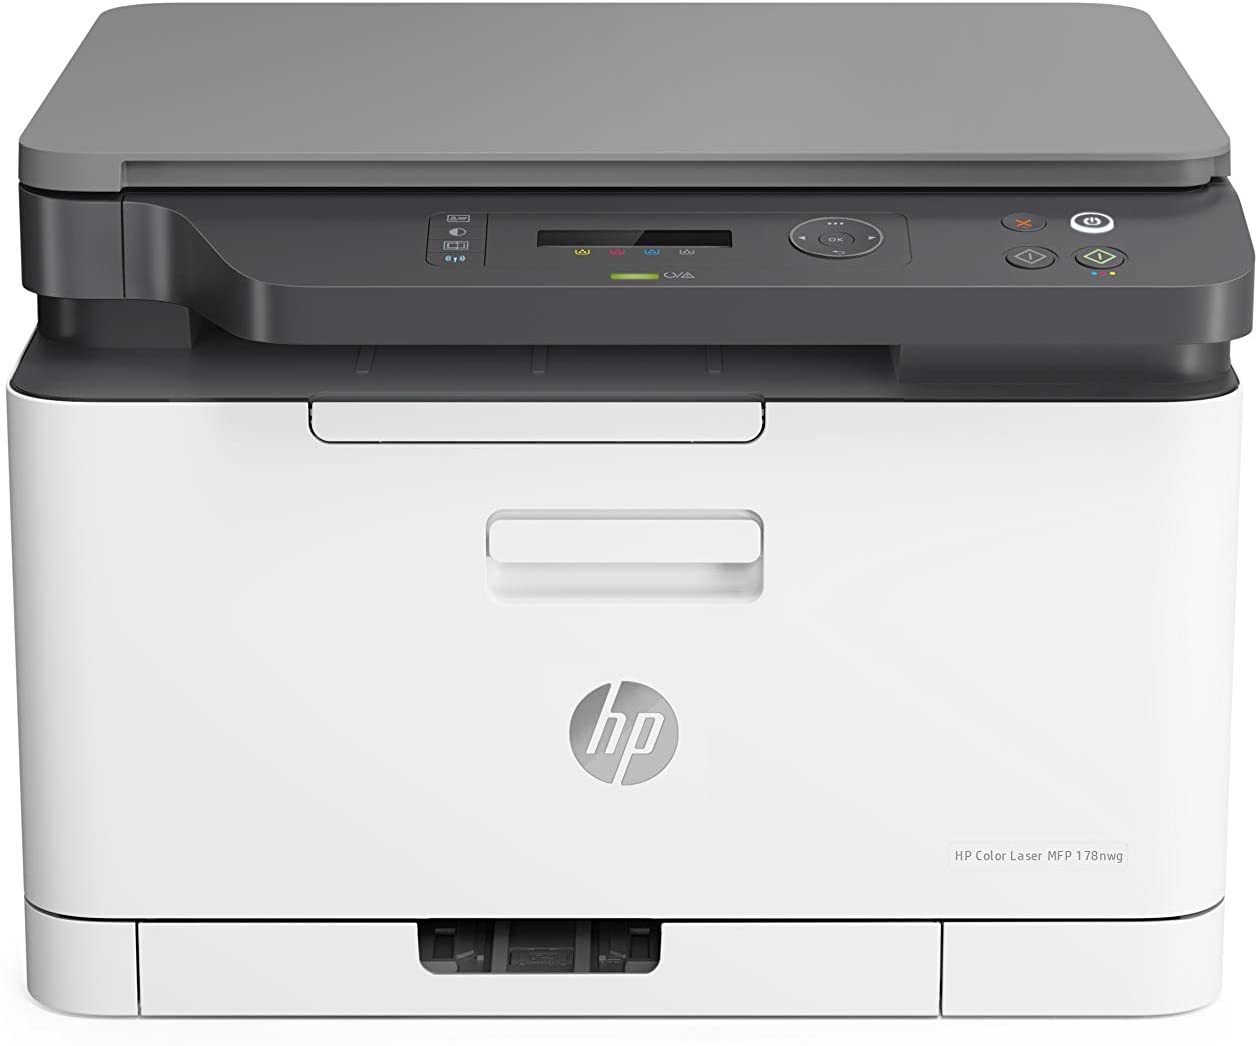 HP Laser 178nw (3-in-1) FARB- Laser-Multifunktionsdrucker (Laserdrucker, Kopierer, Scanner) 